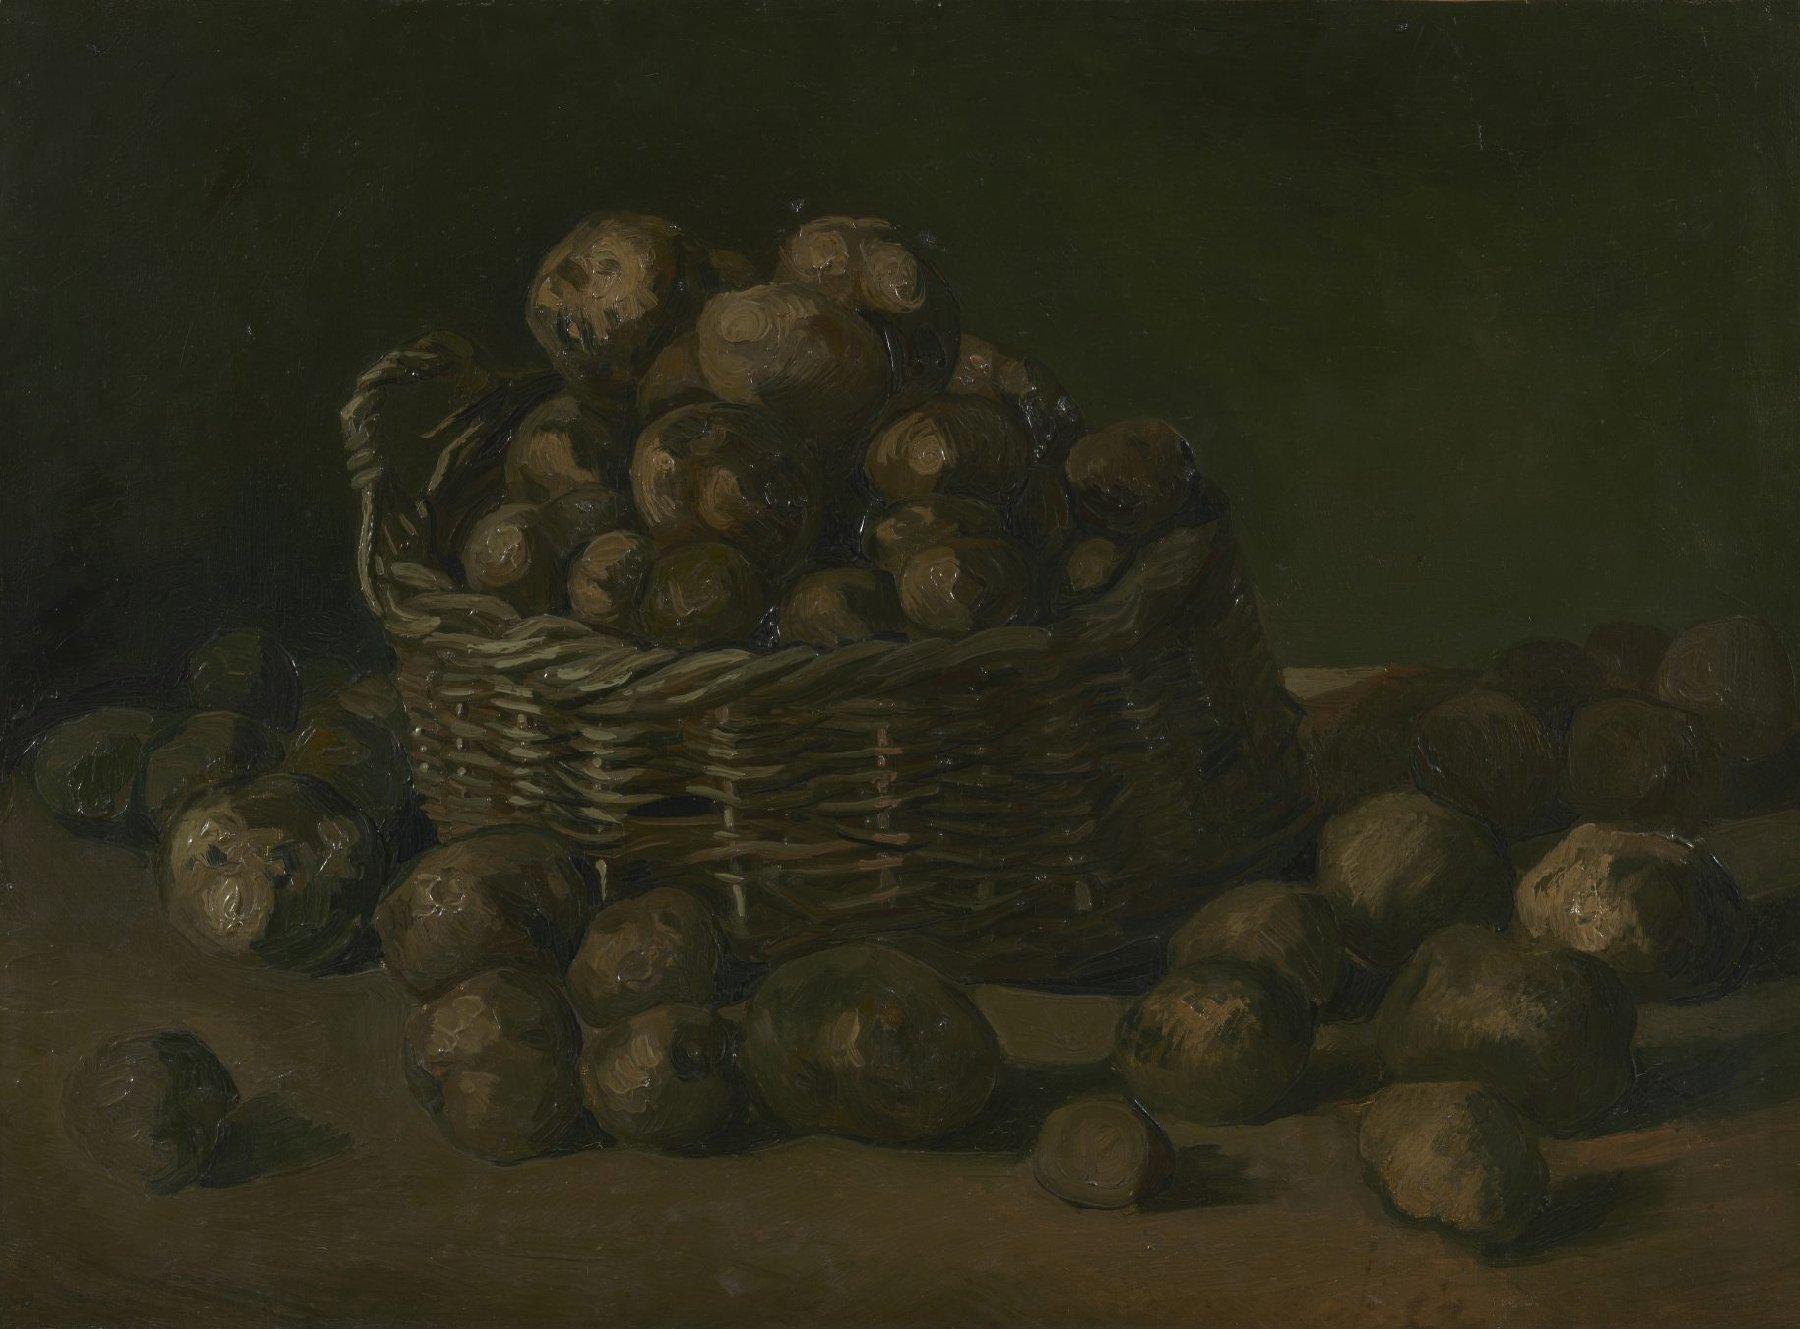 Mand met aardappels Vincent van Gogh (1853 - 1890), Nuenen, september 1885